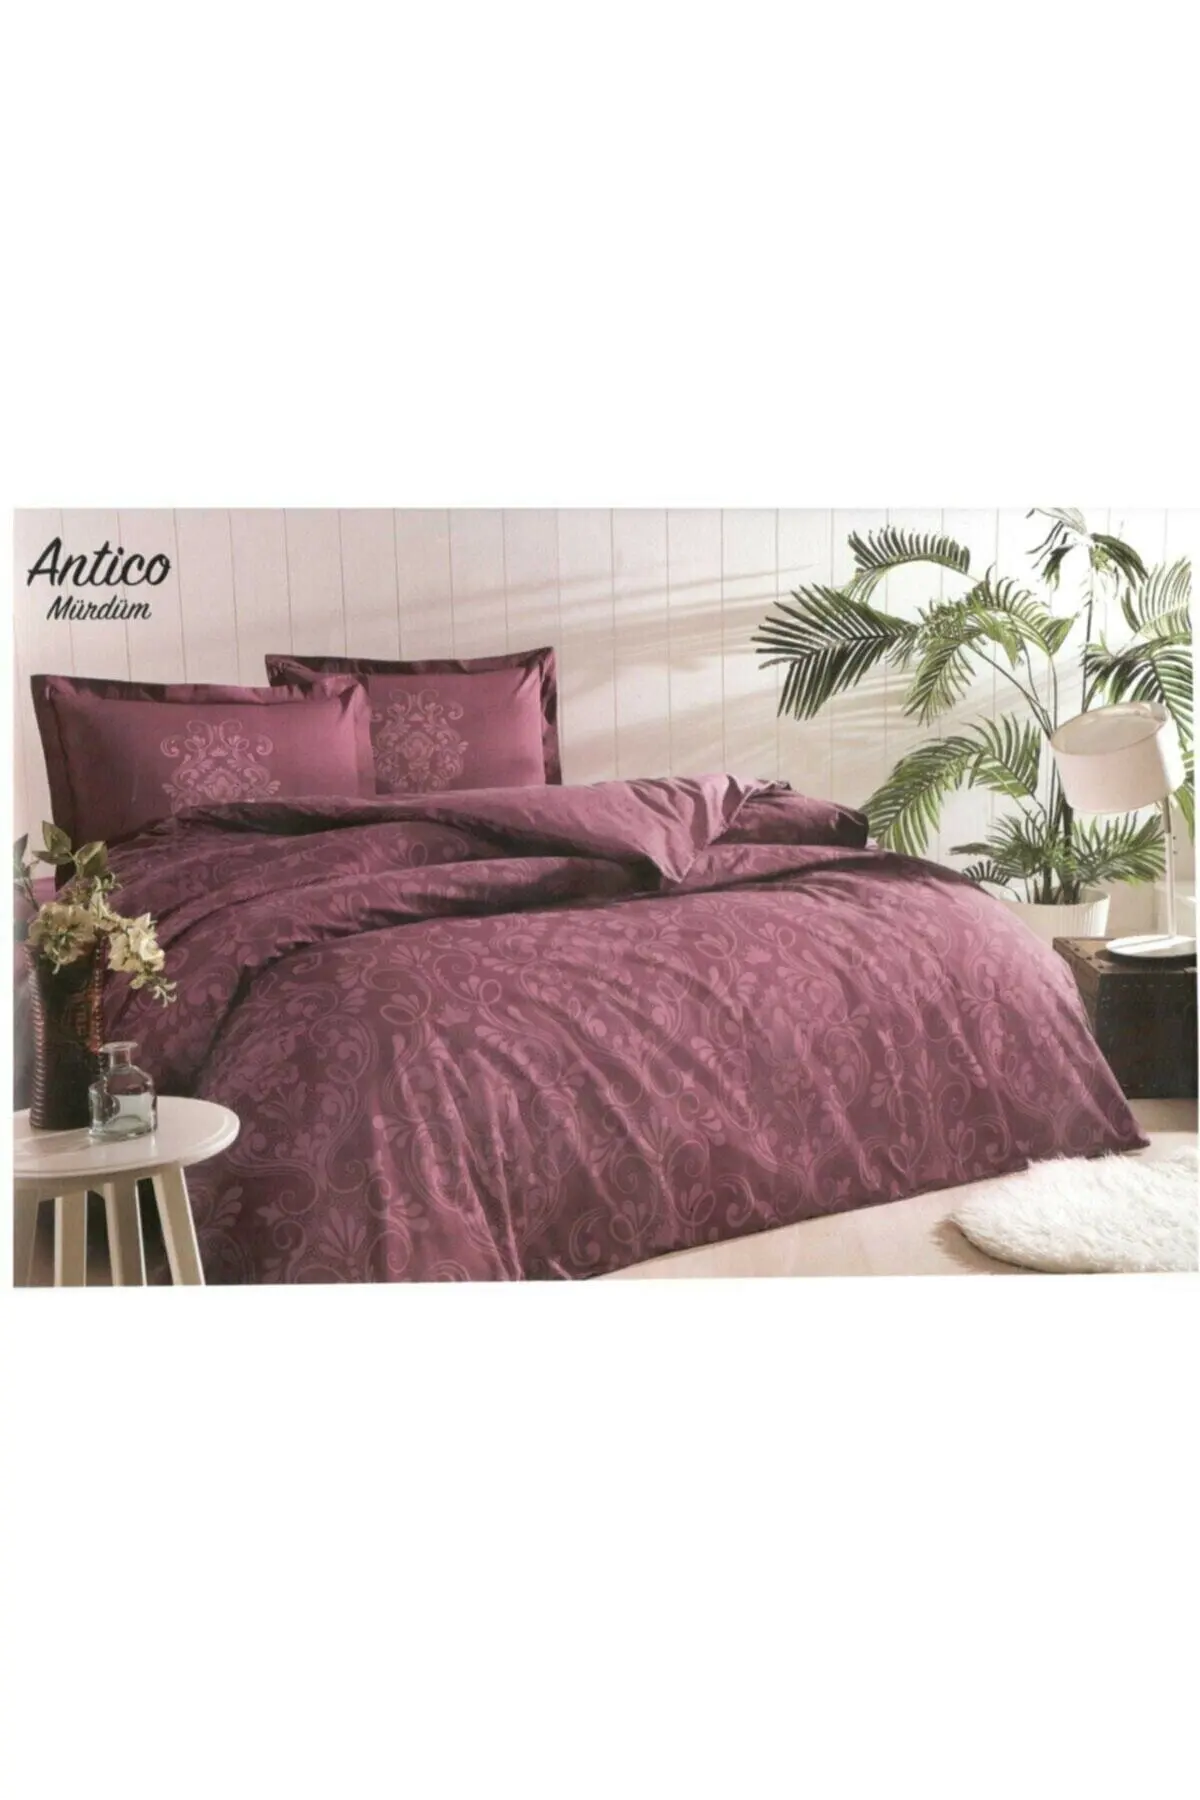 

Özdilek Antico Double Duvet Cover Set Plum, 200x220 cm Duvet Cover, 240x260 Bed Sheet, 50x70 Pillowcase (2 Pieces), 100% Cotton